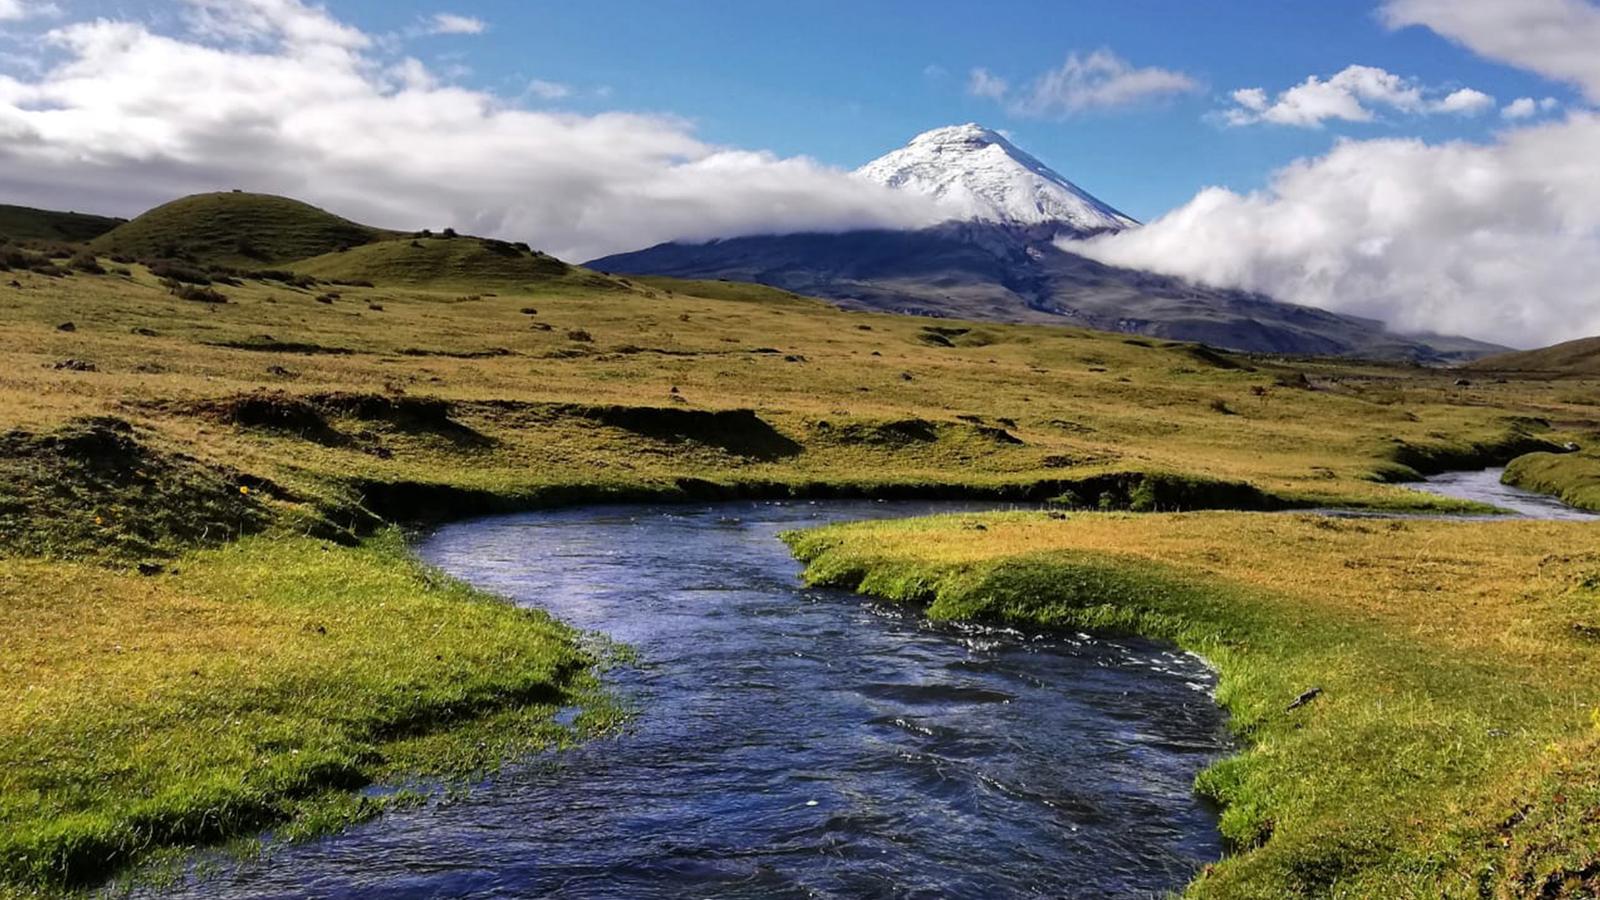 Ecuador: Amazon, Hot Springs & Volcanoes